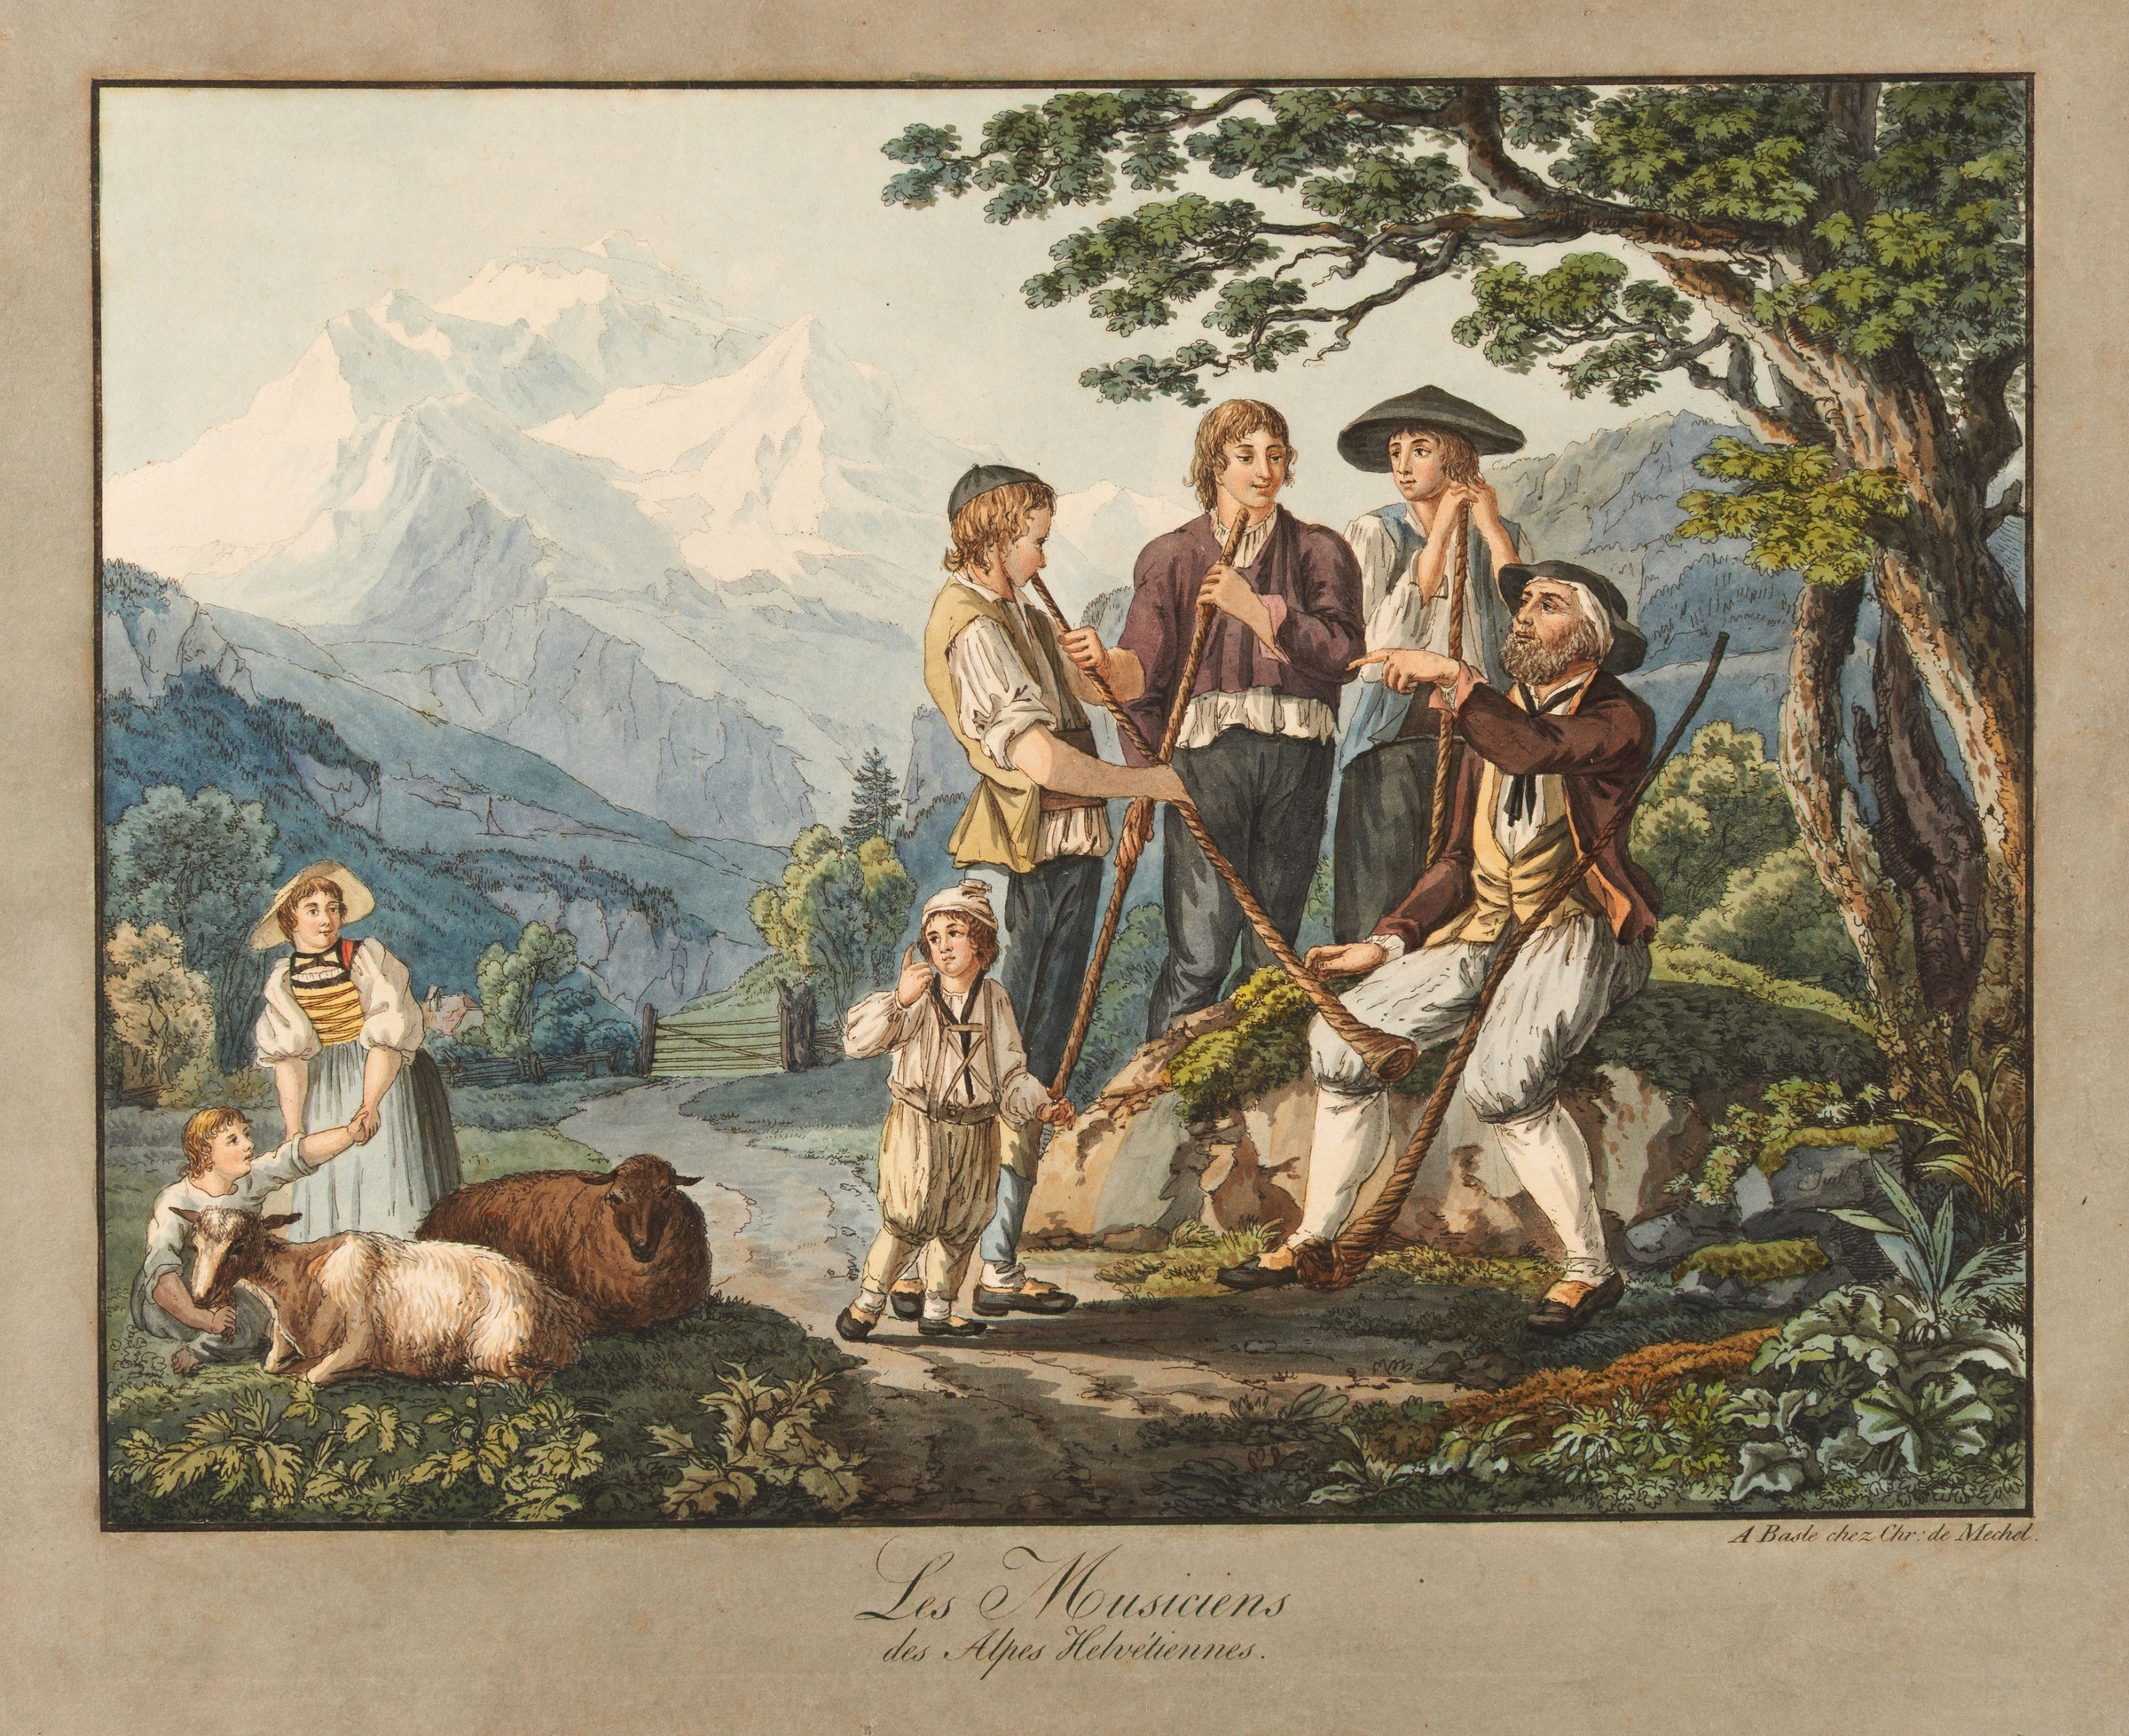 Groupe de trois joueurs de cor des Alpes avec leur moniteur; à l’arrière-plan, la Jungfrau